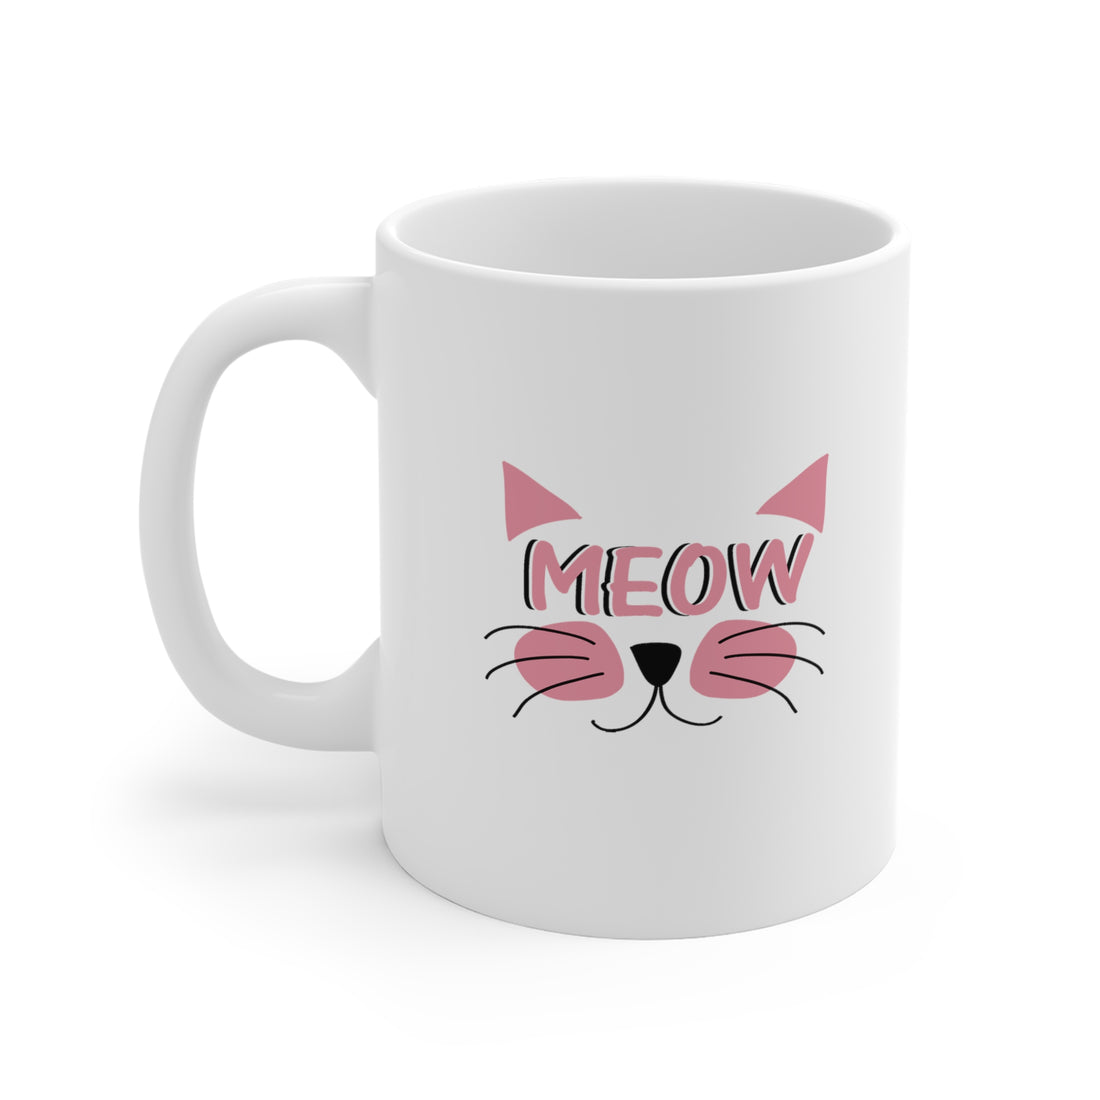 Meow - White Ceramic Mug 2 sizes Available